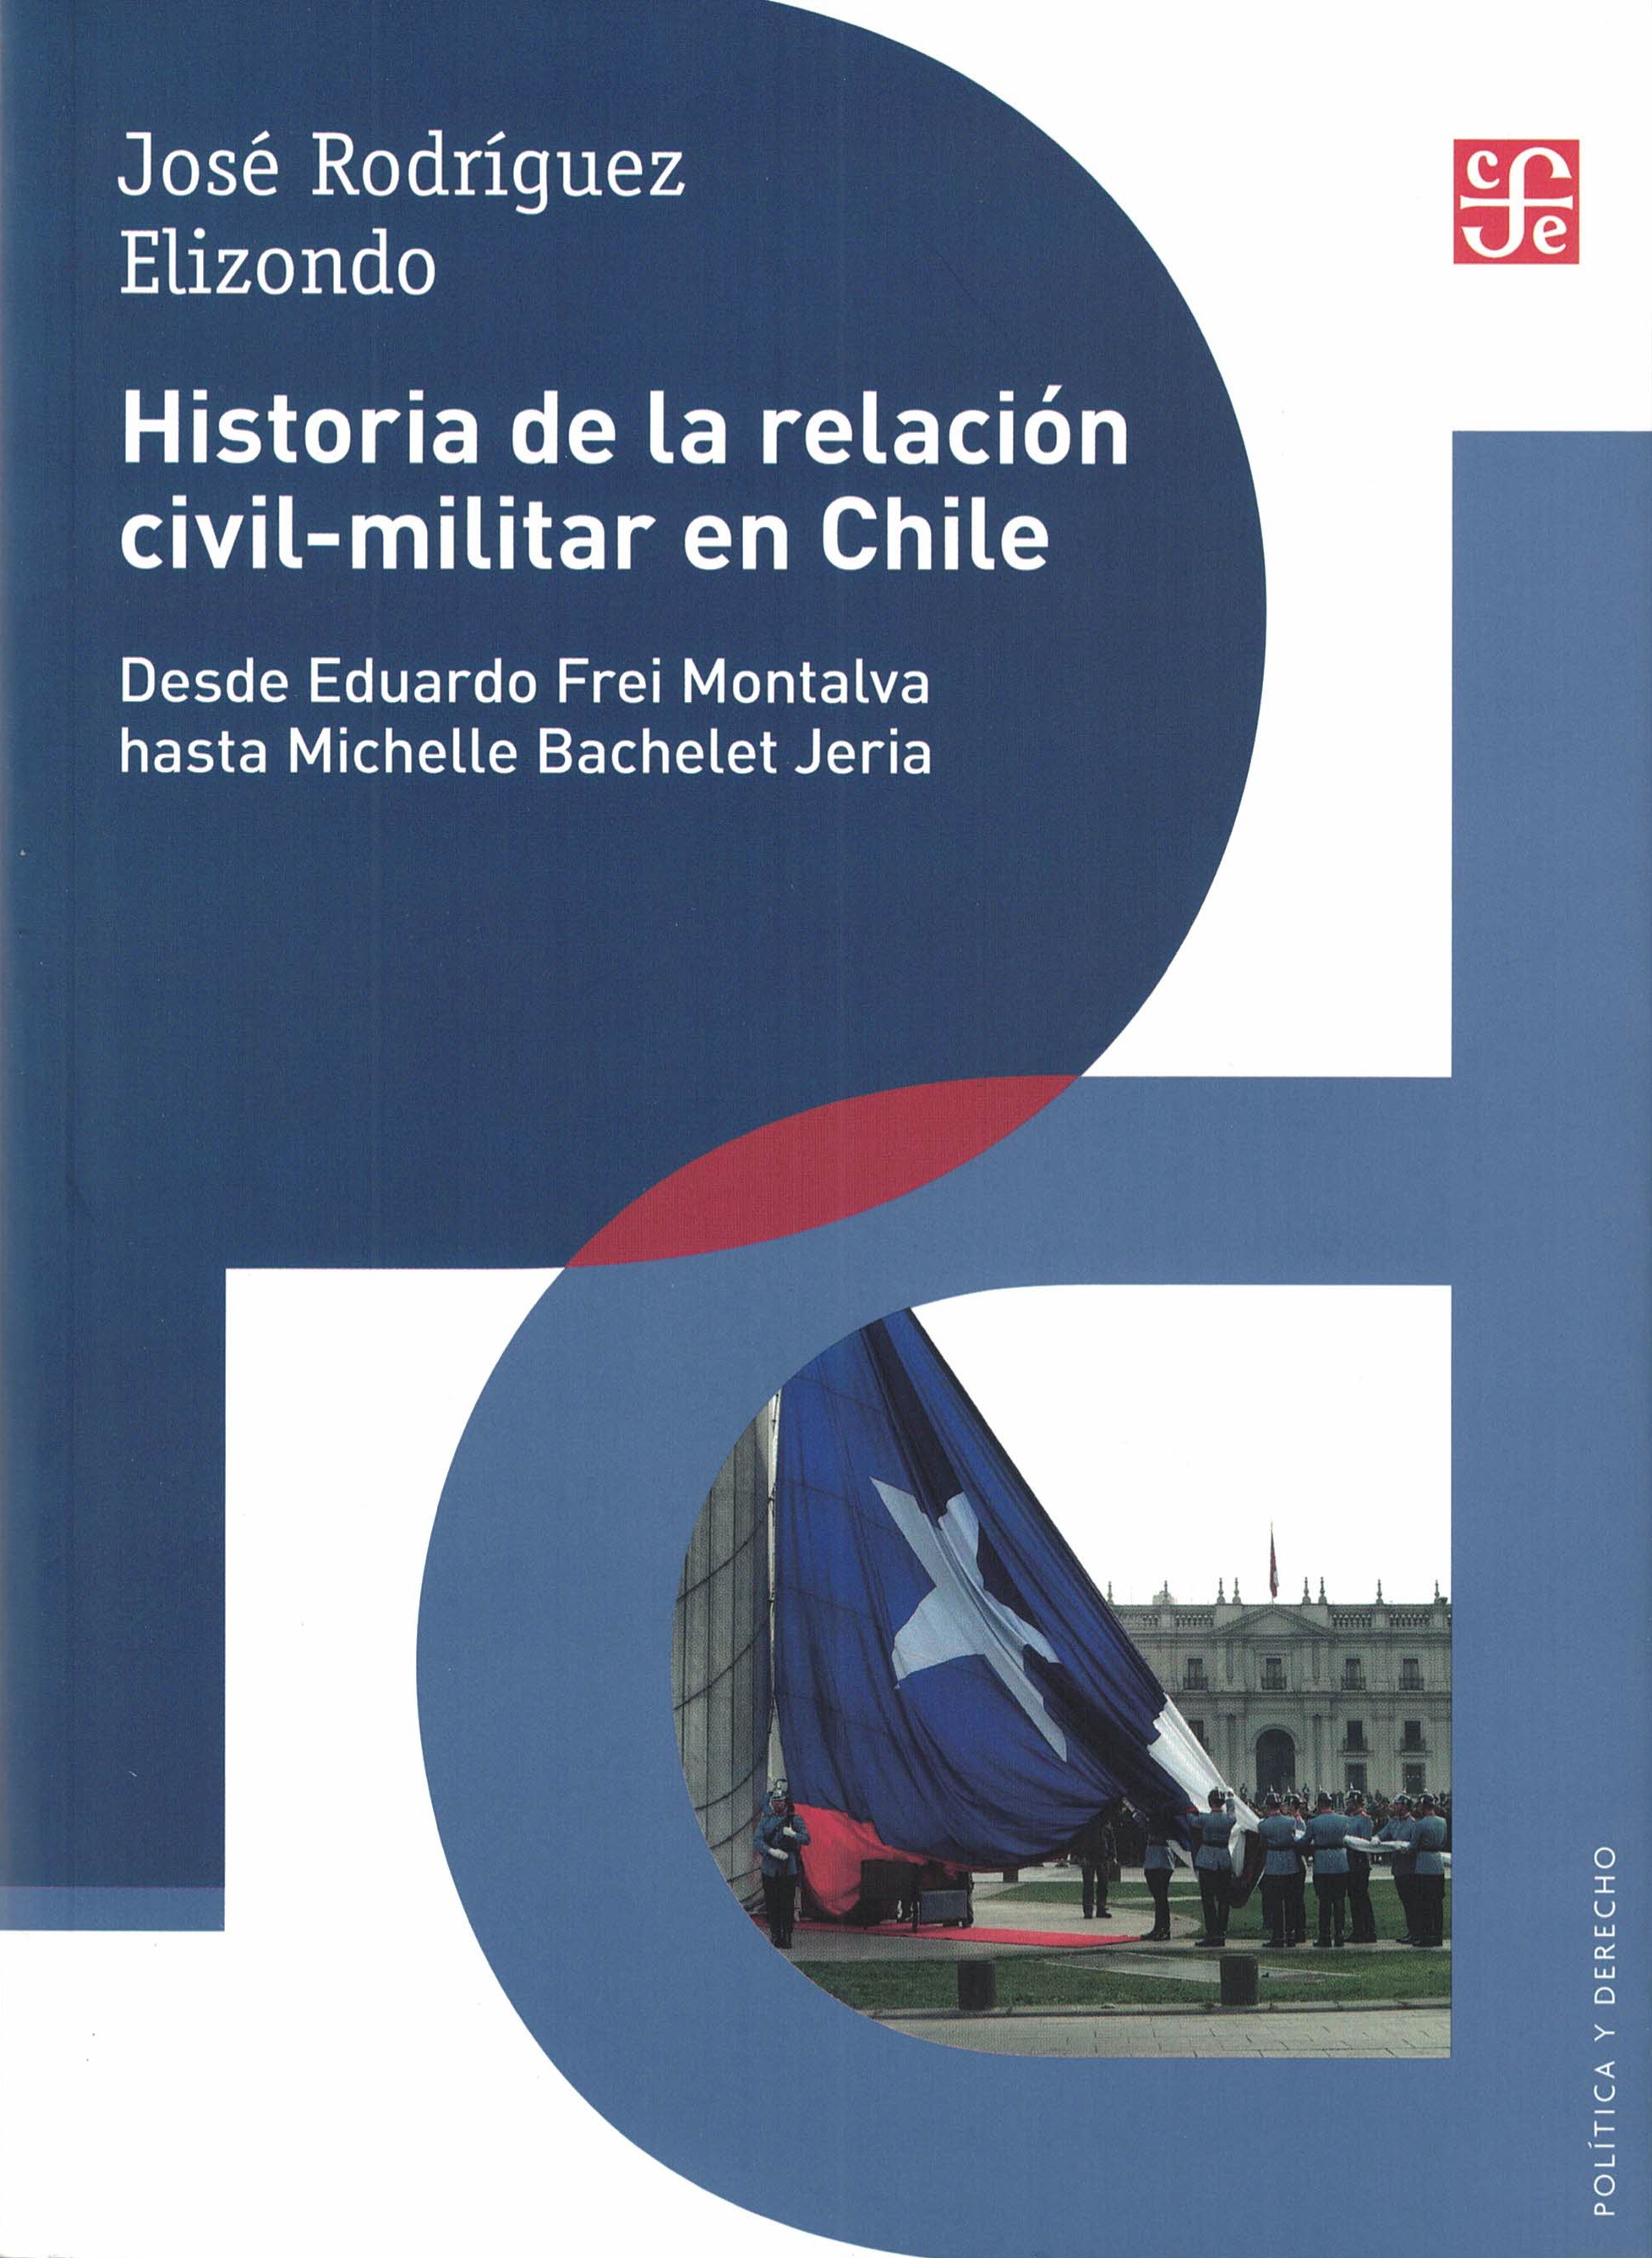 Hist. Rel. Cívico Militar en Chile (José Rodríguez Elizondo)